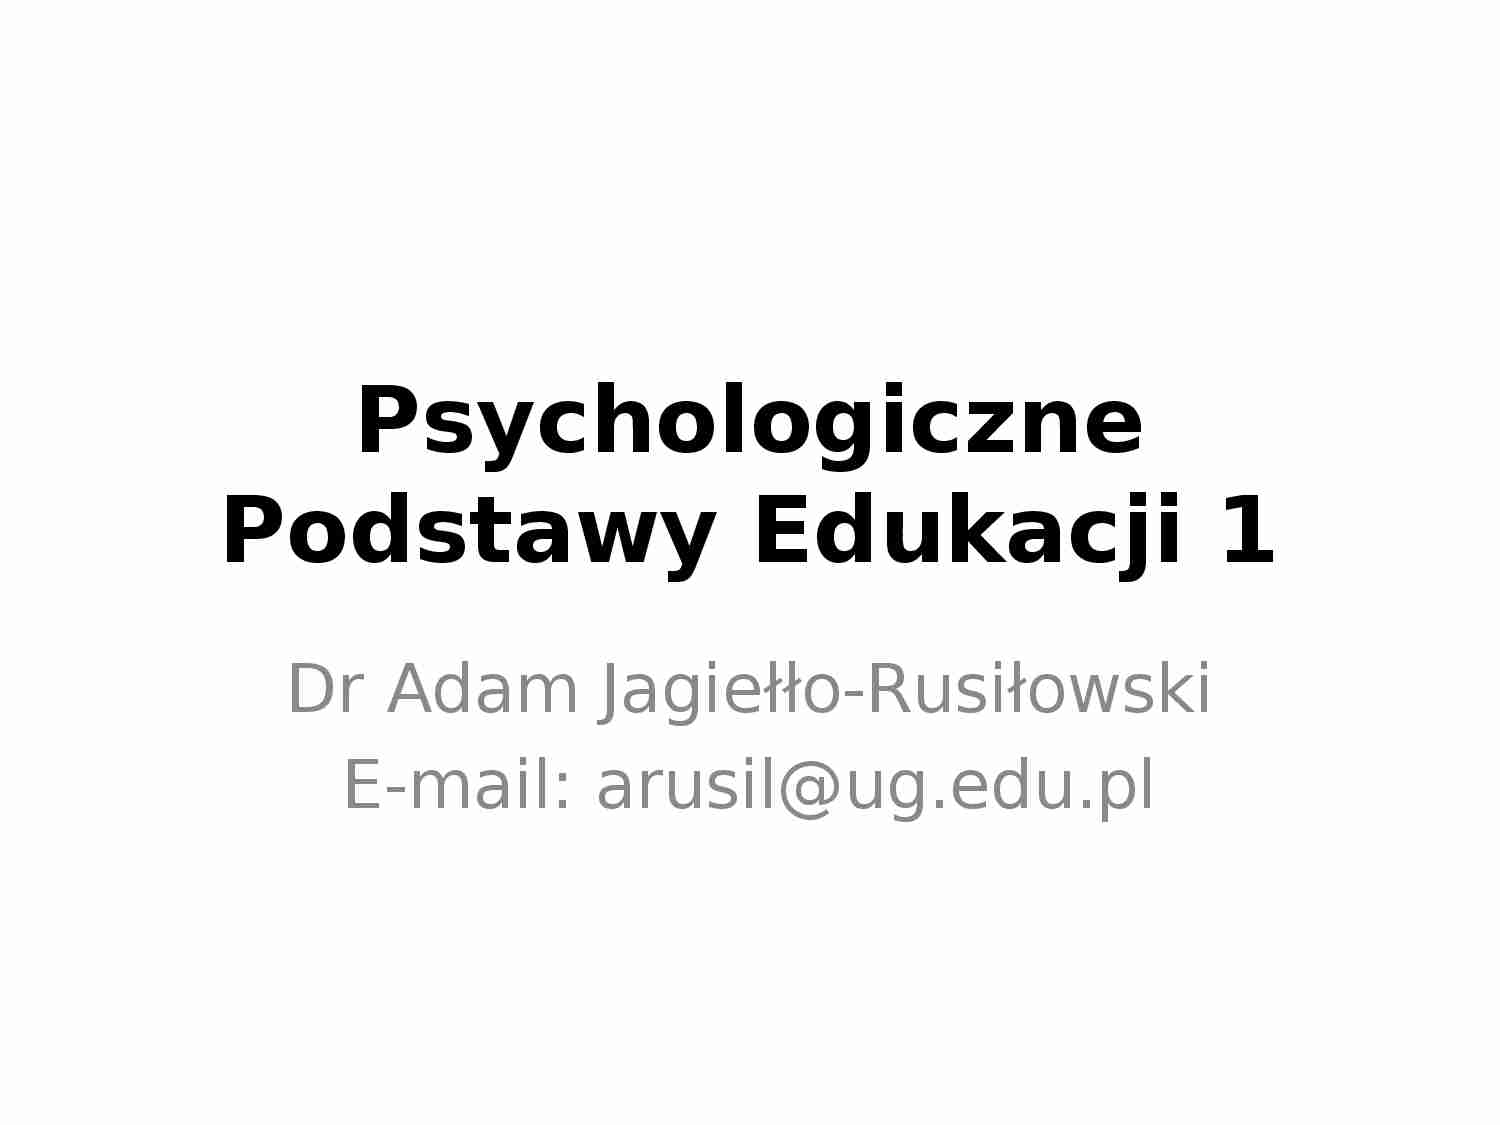 Psychologiczne podstawy edukacji - wykład cz. 1 - strona 1